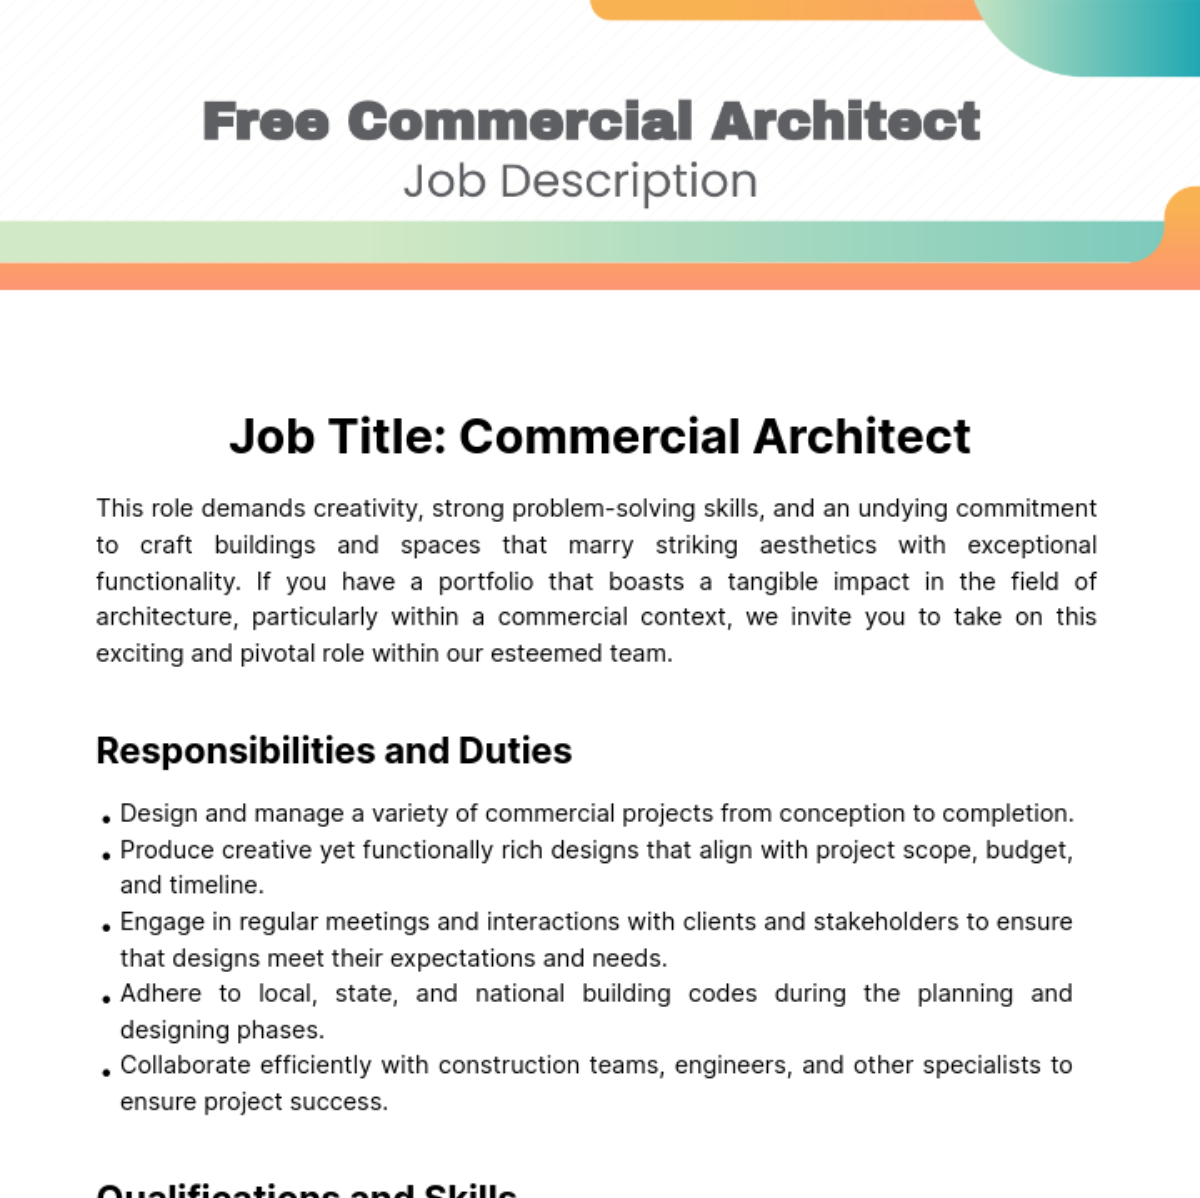 Free Commercial Architect Job Description Template